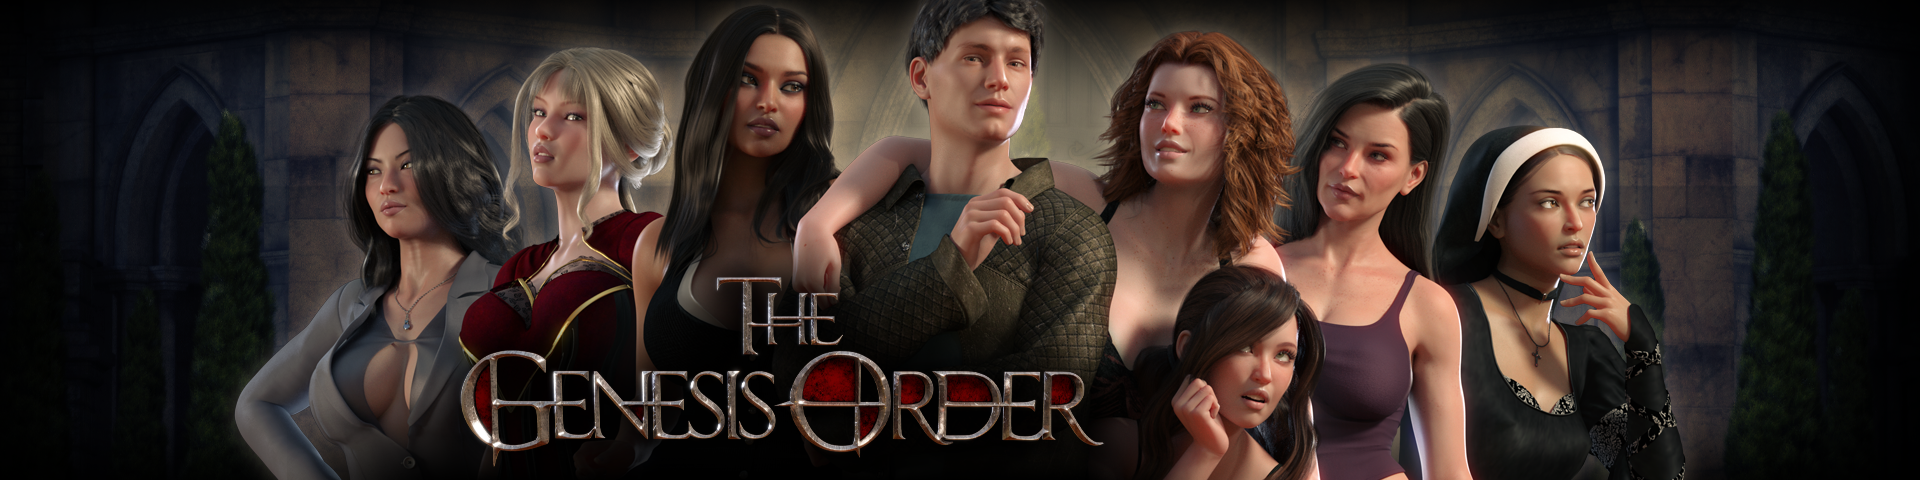 Play the genesis order online